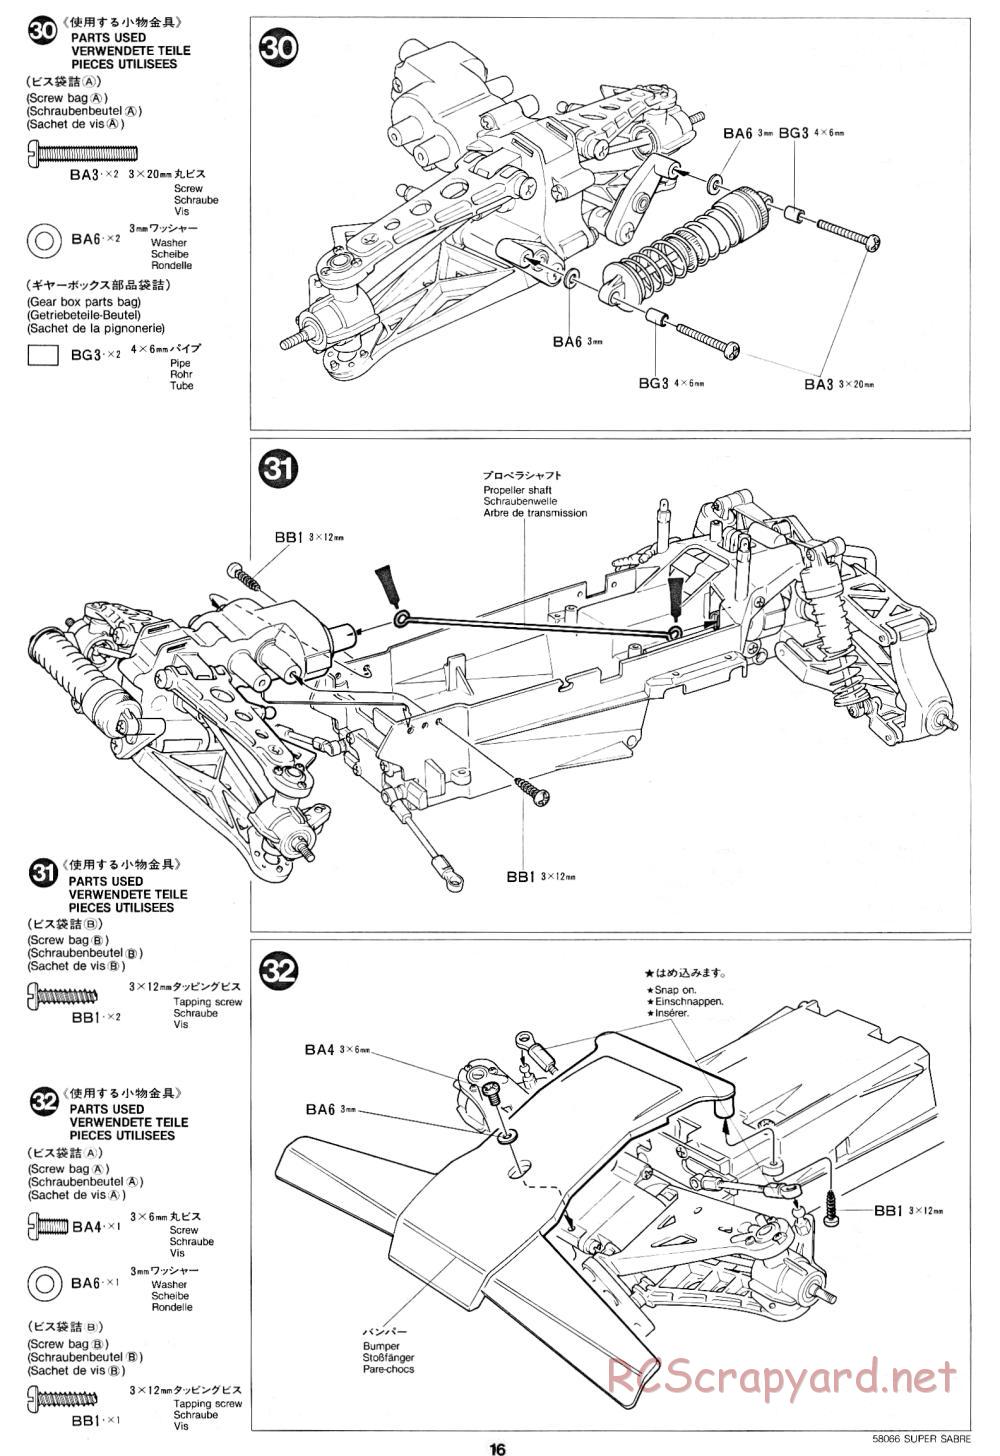 Tamiya - Super Sabre - 58066 - Manual - Page 16